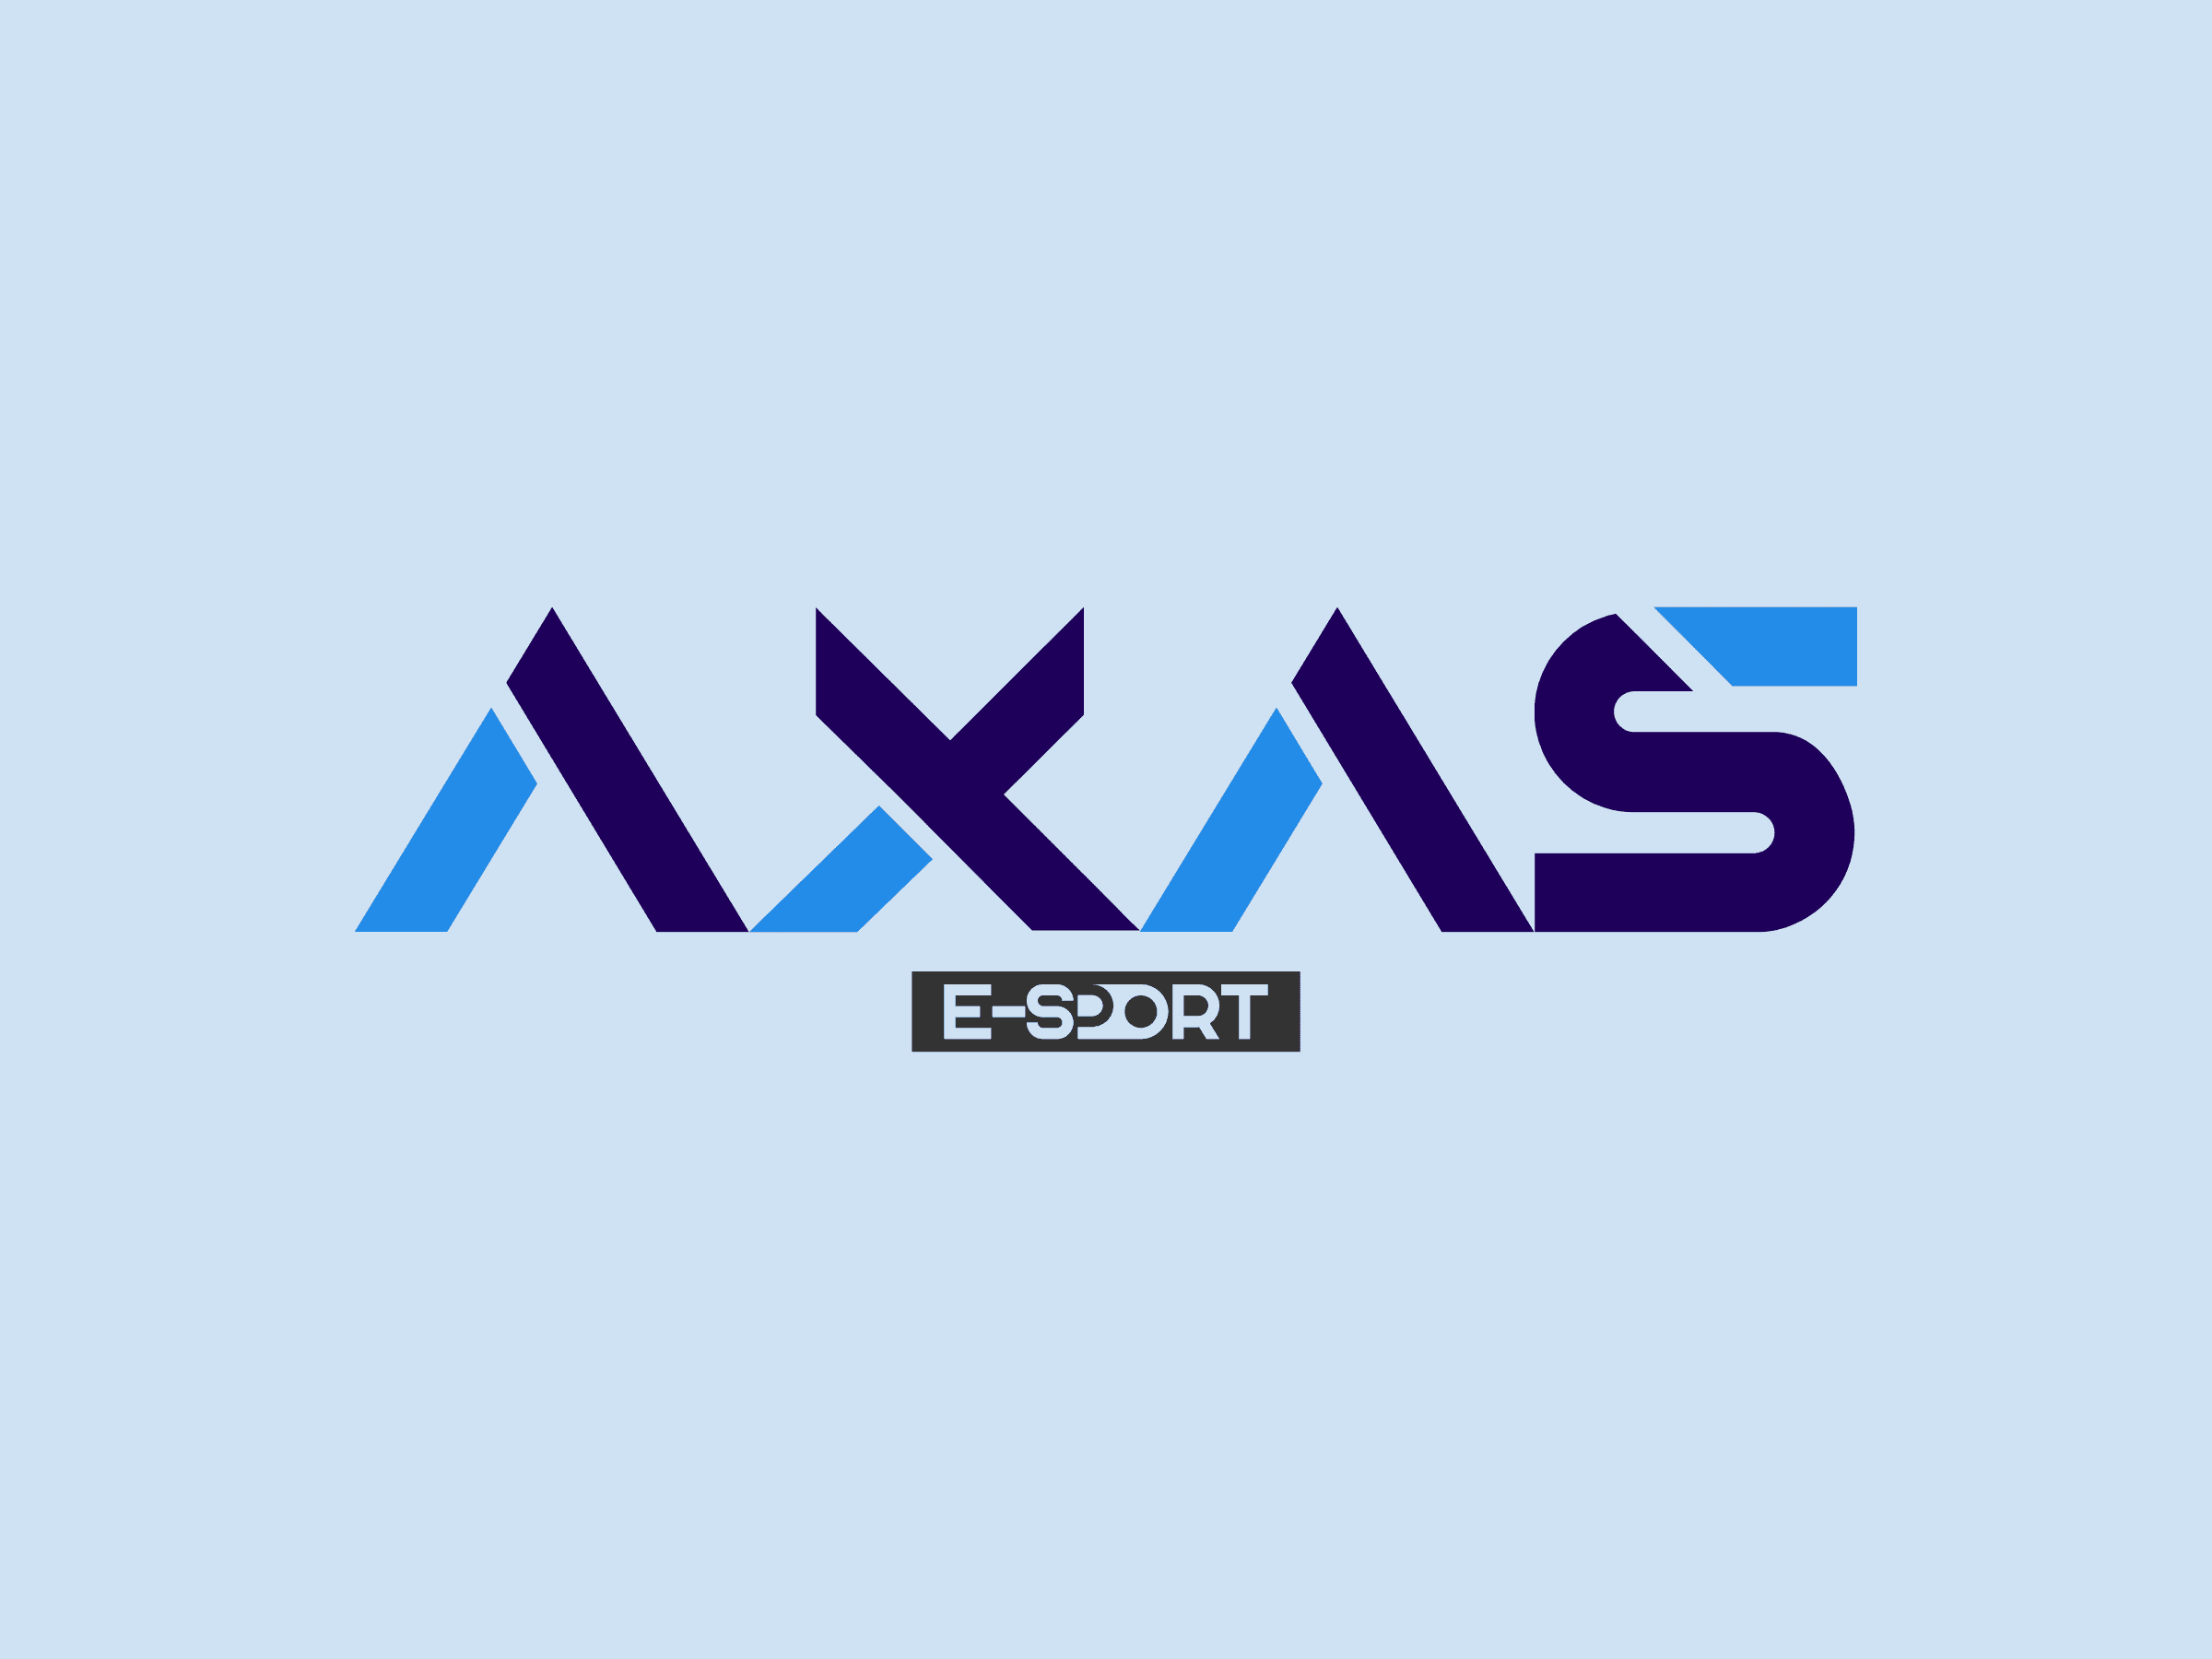 AXAS E-sport